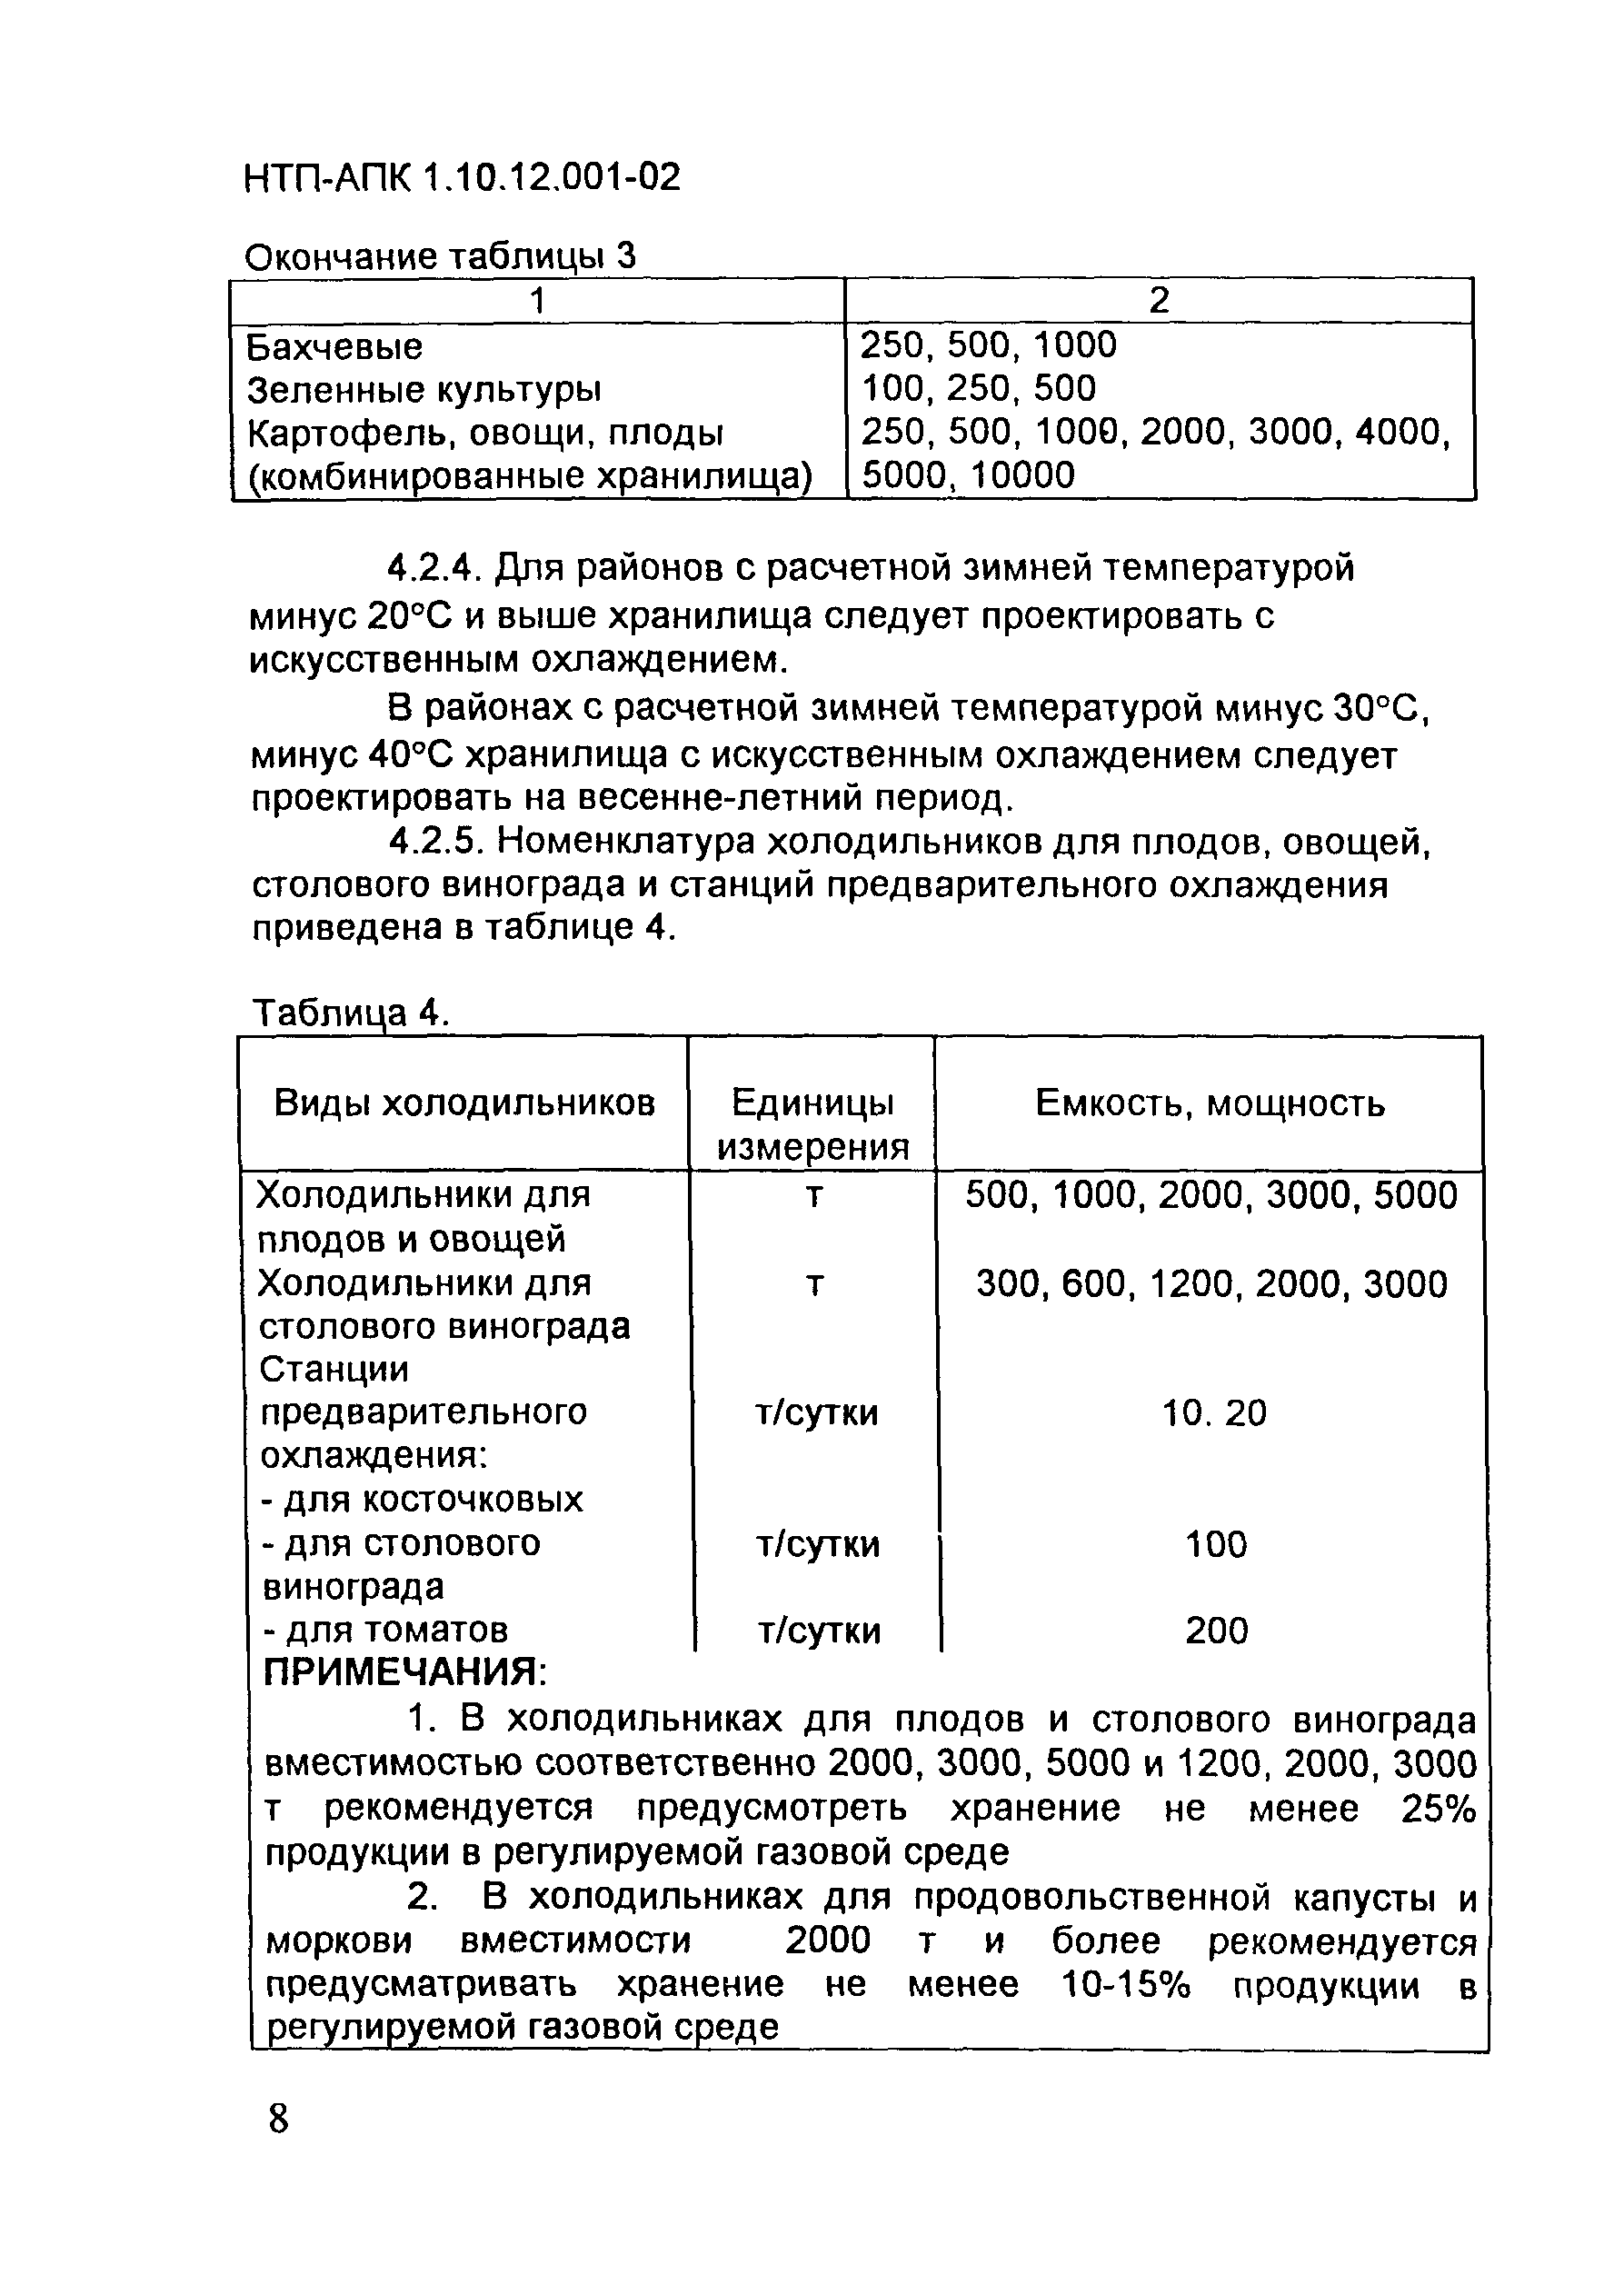 НТП АПК 1.10.12.001-02